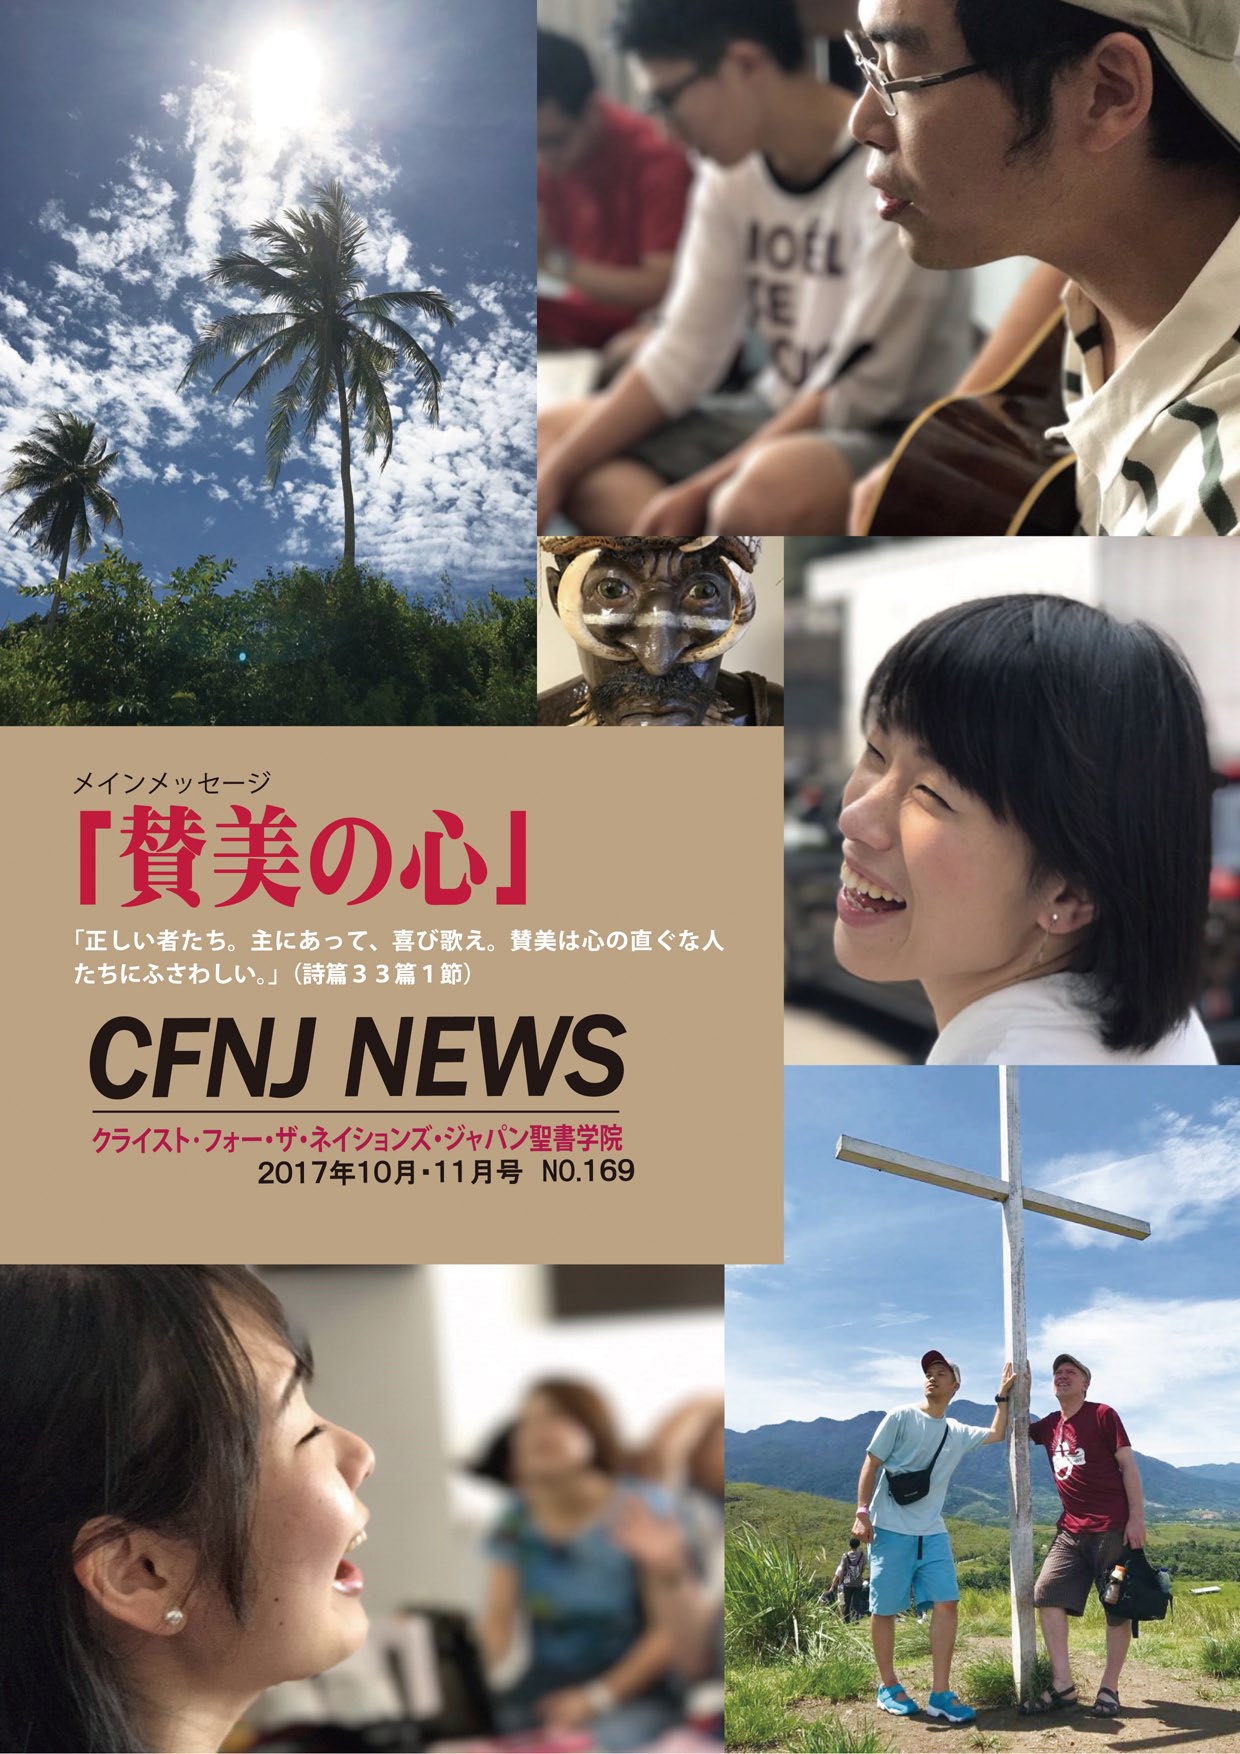 CFNJ NEWS No.169